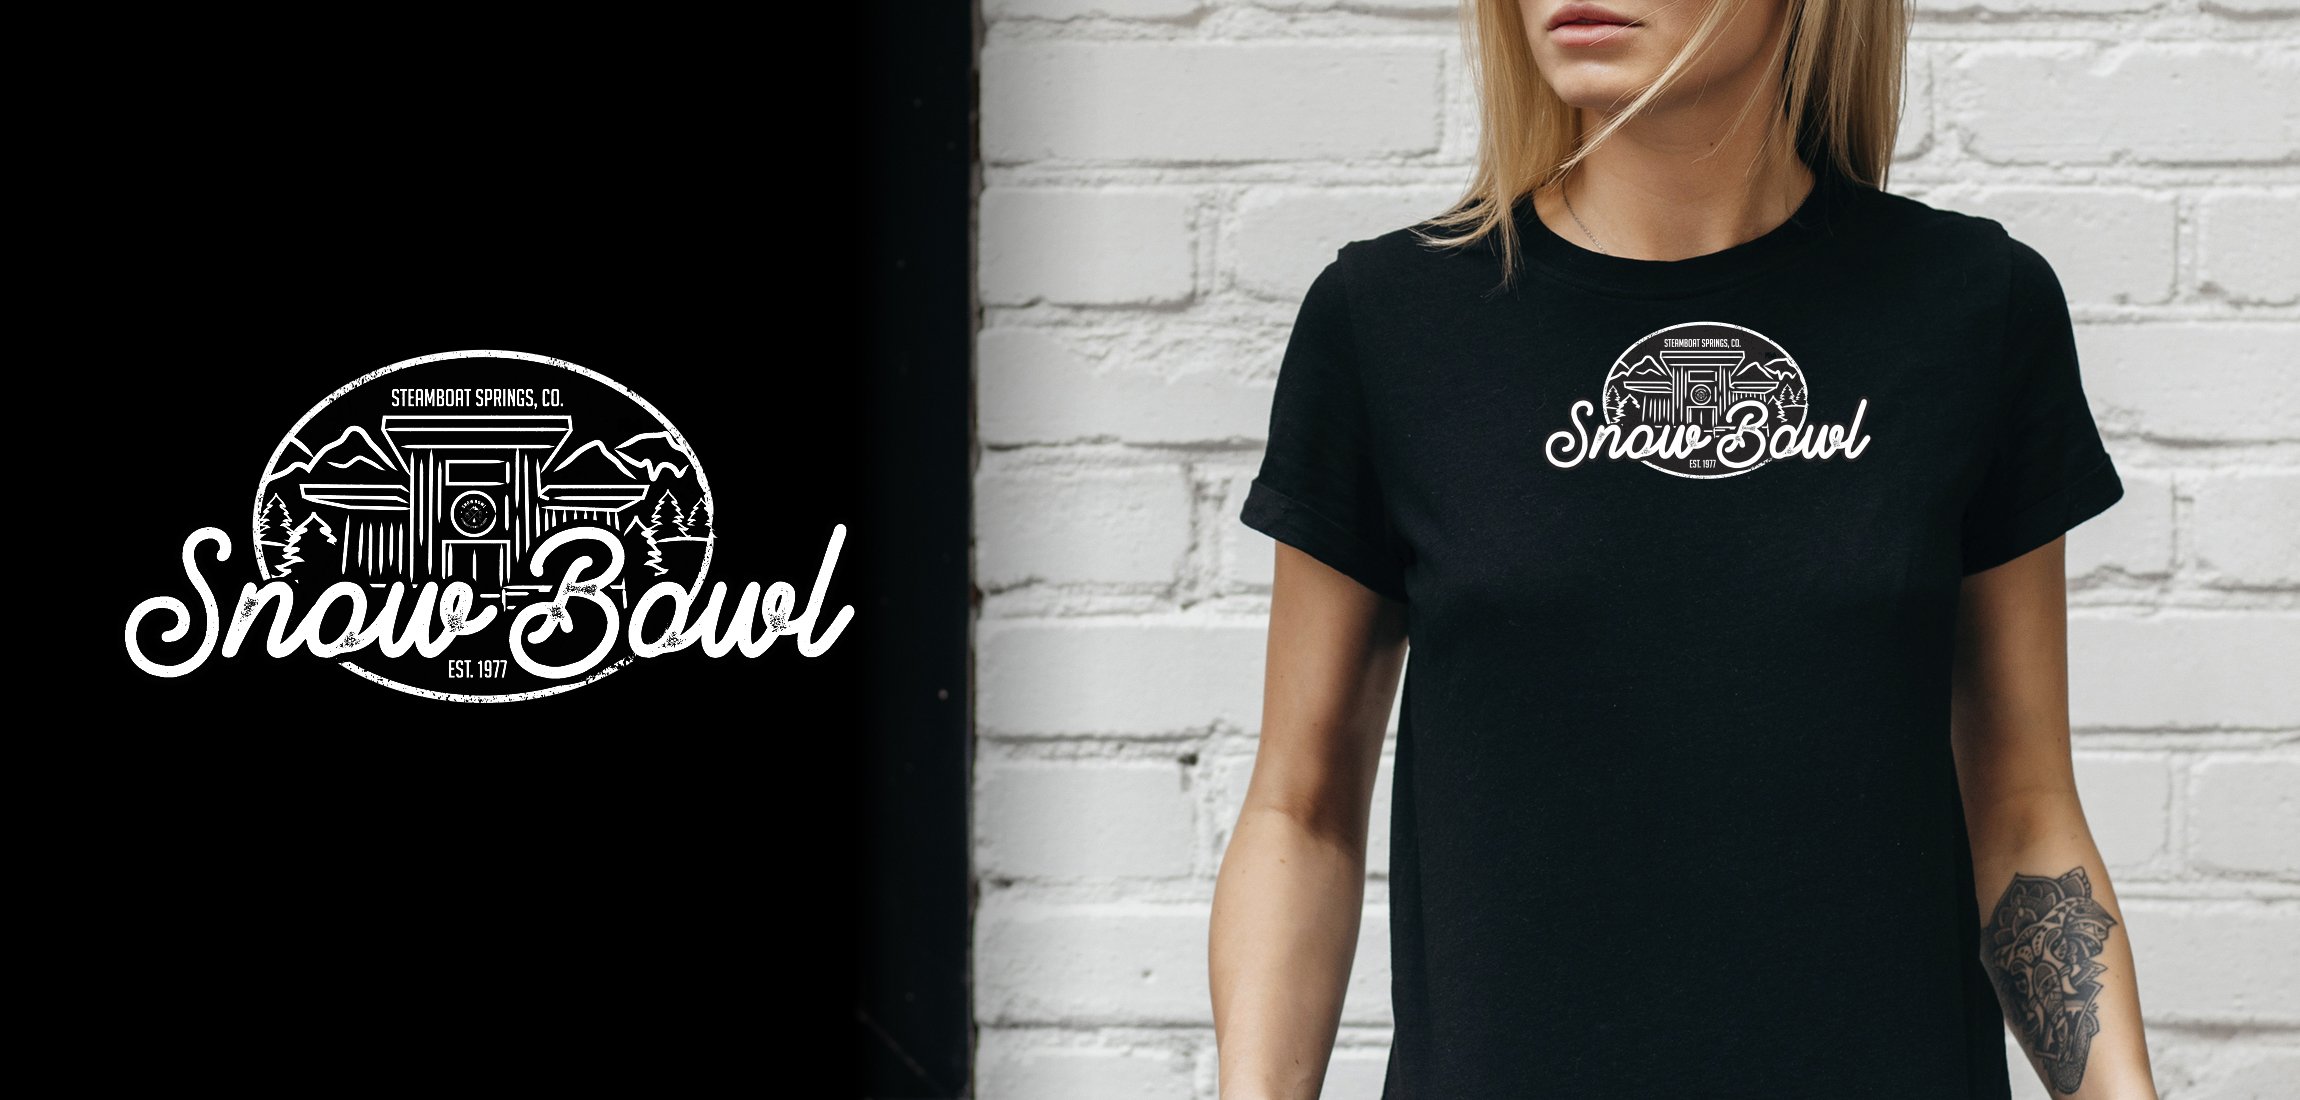 snow bowl tshirt design.jpg